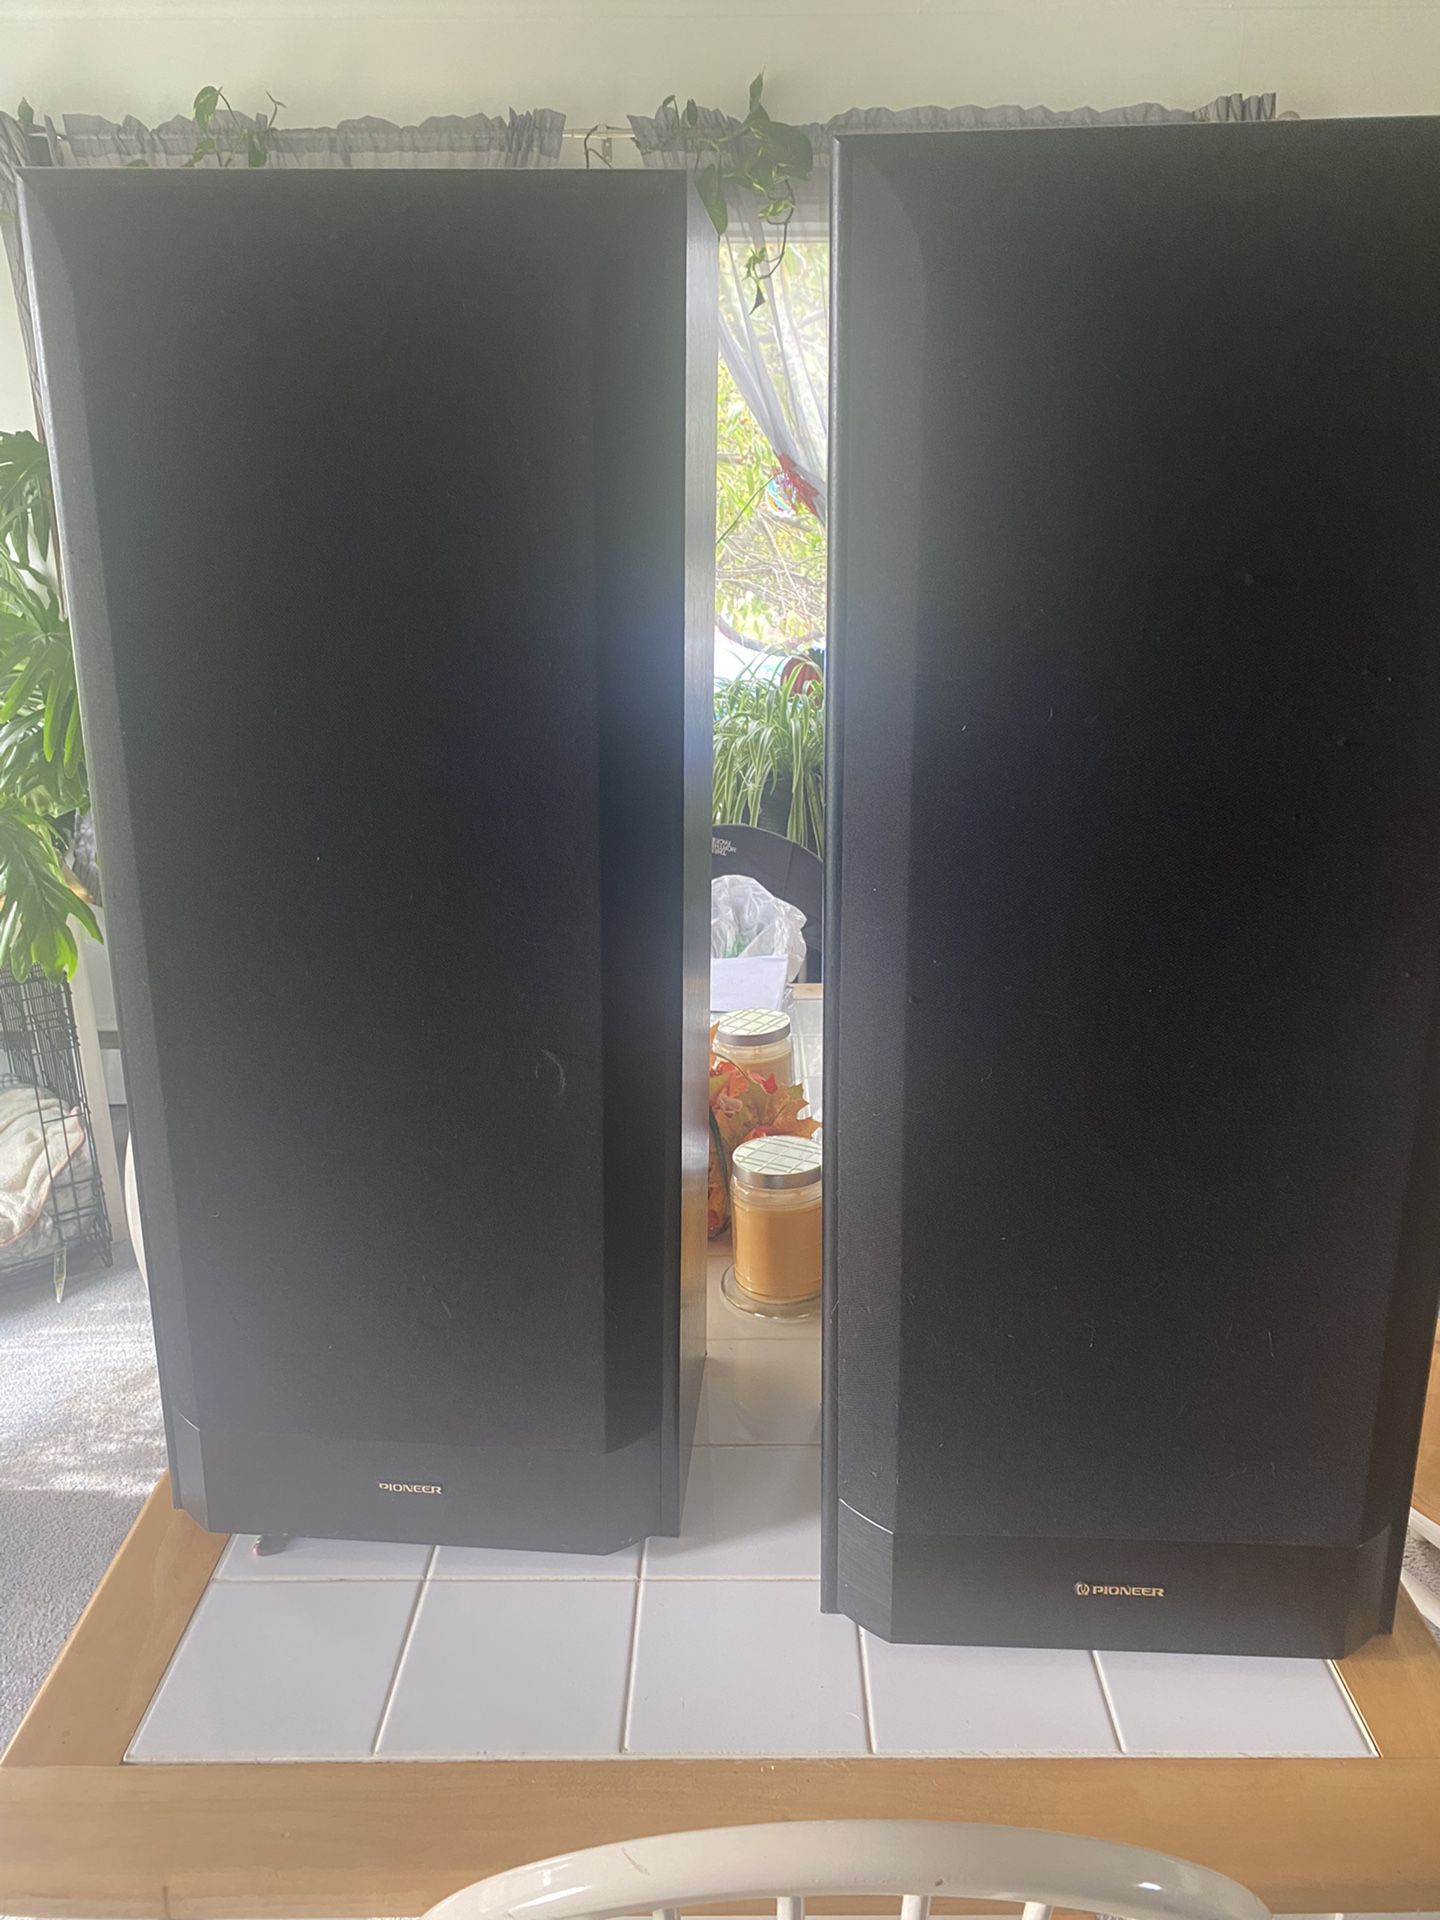 Pioneer 3 Way Speaker System CS-R590 Pair Loud And Very Clean!